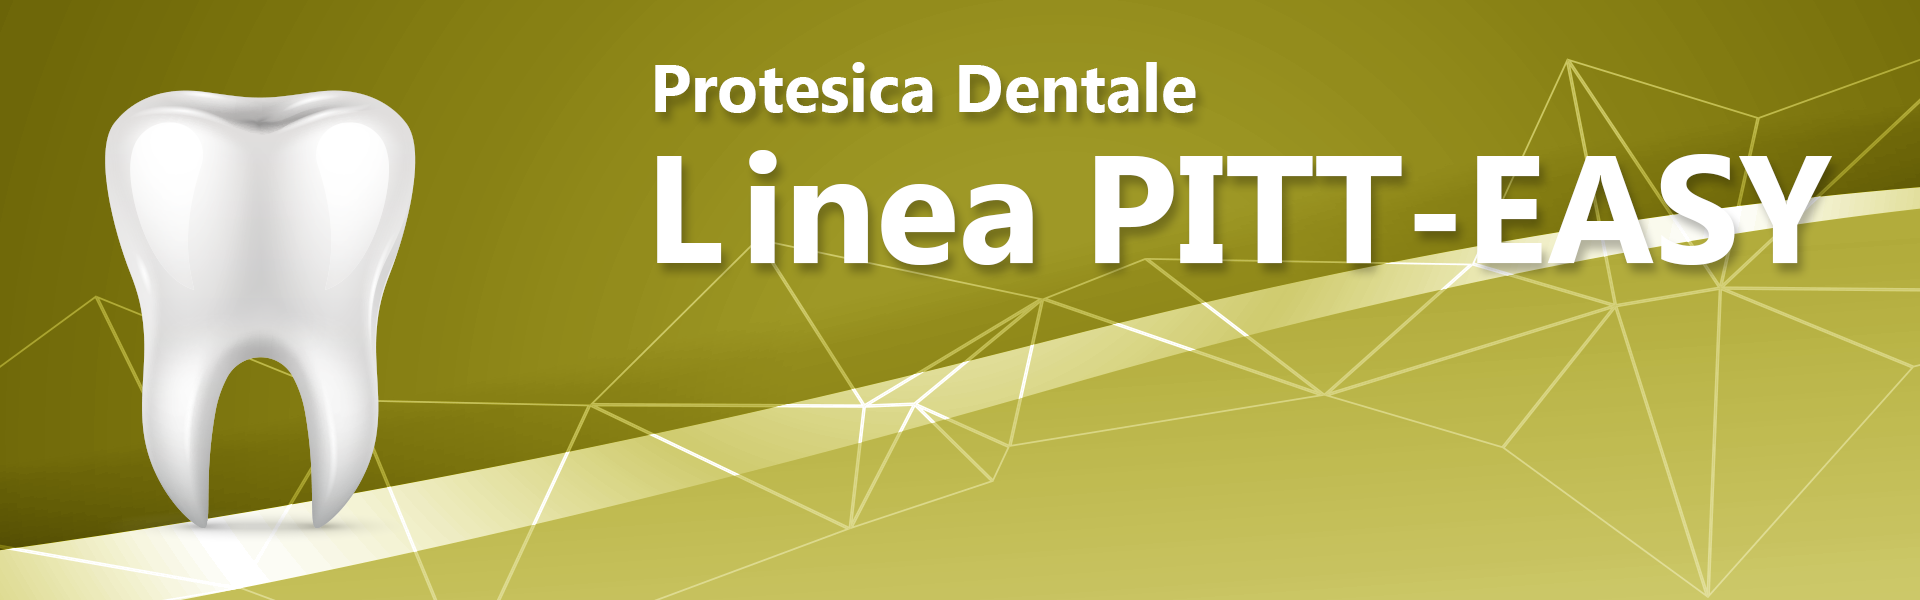 Linea PITT-EASY